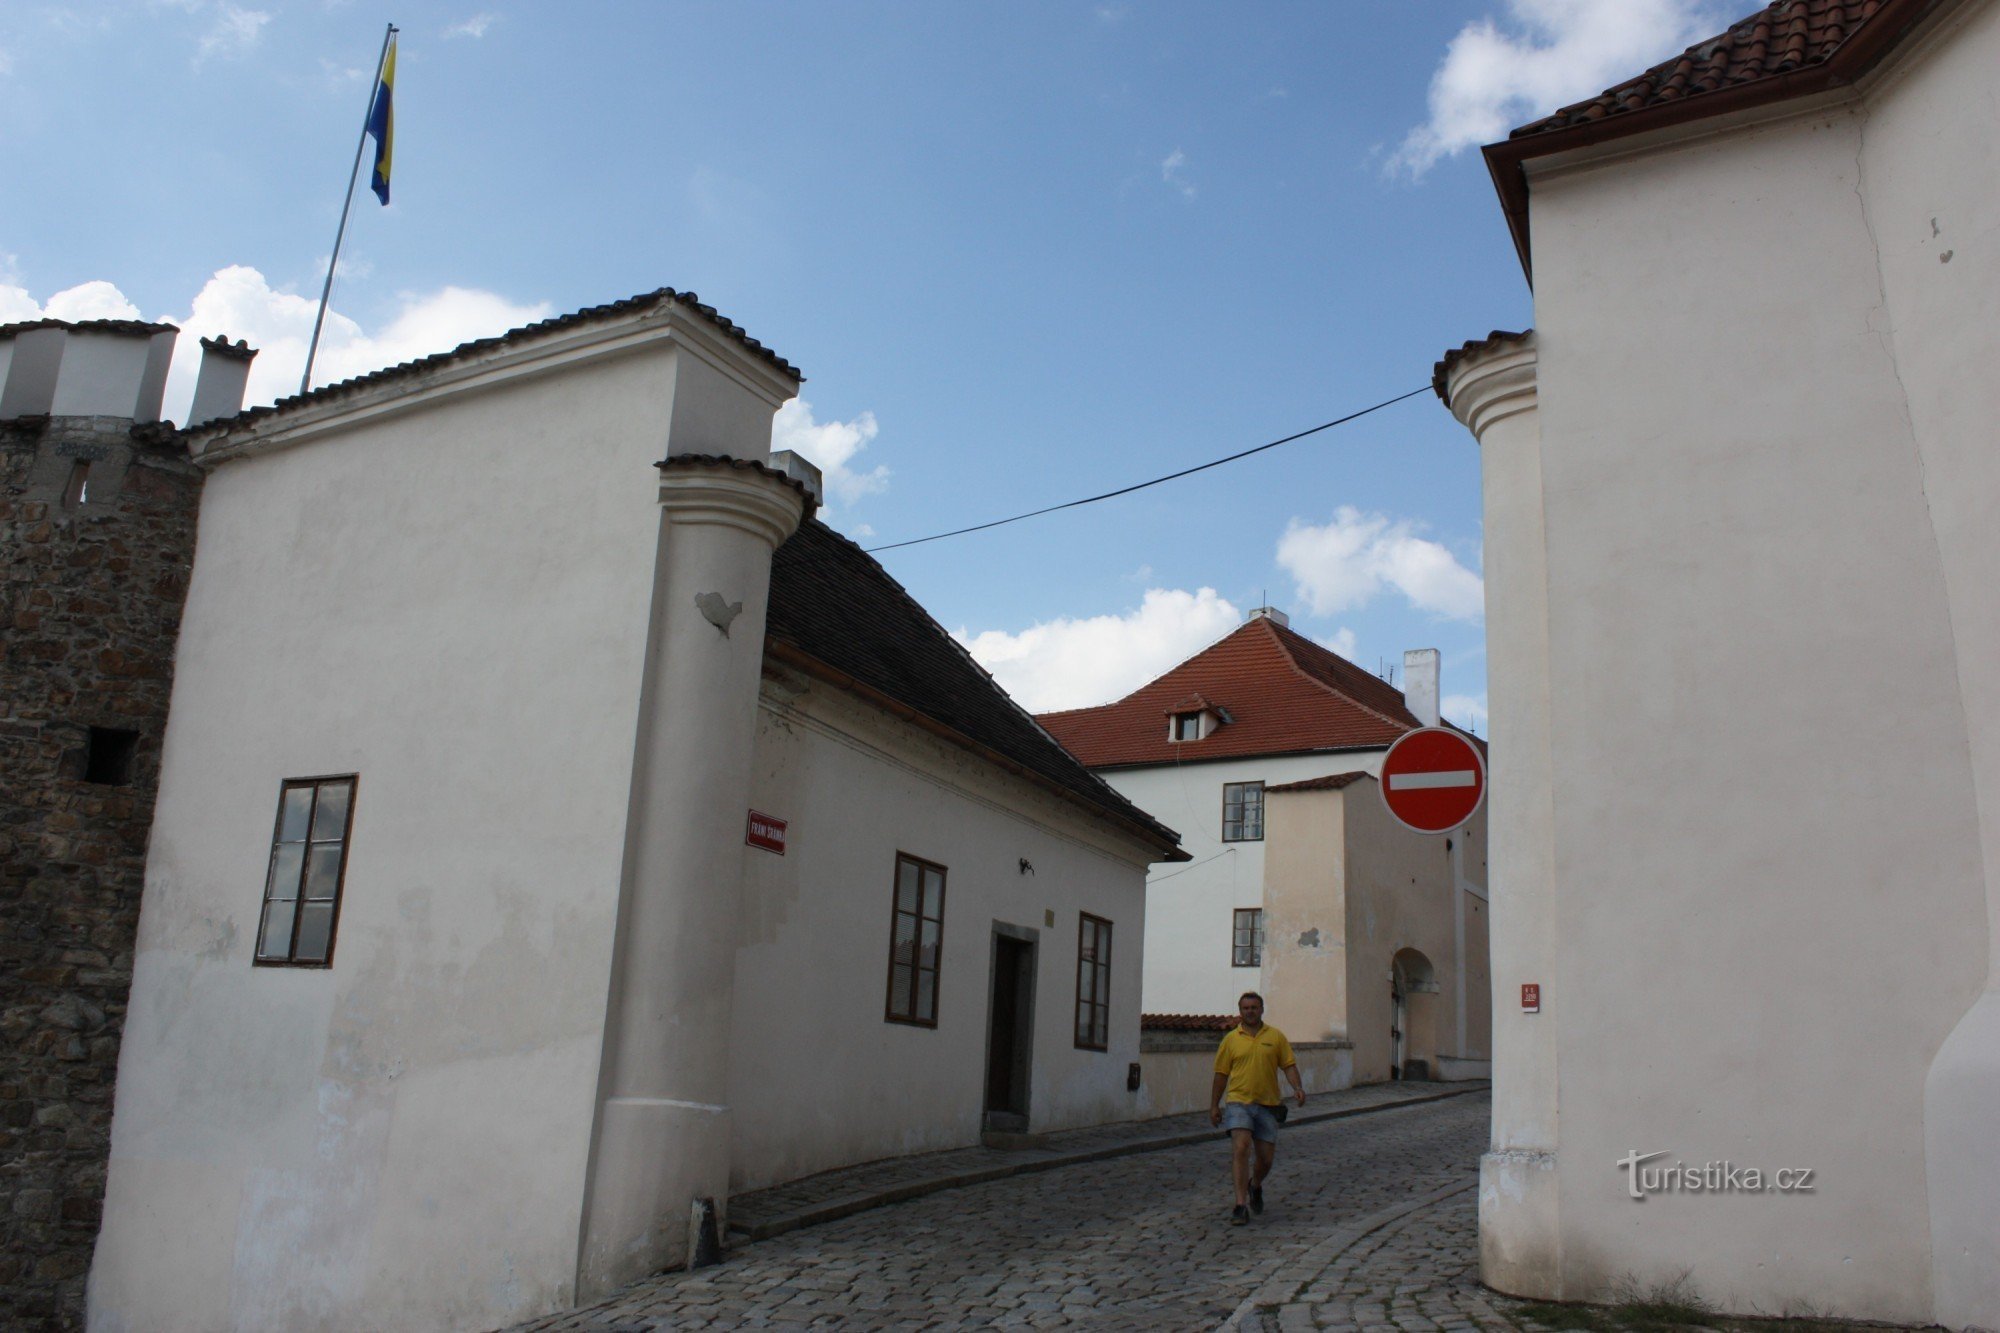 Το σπίτι βρίσκεται κοντά στην πρώην Πύλη Putim